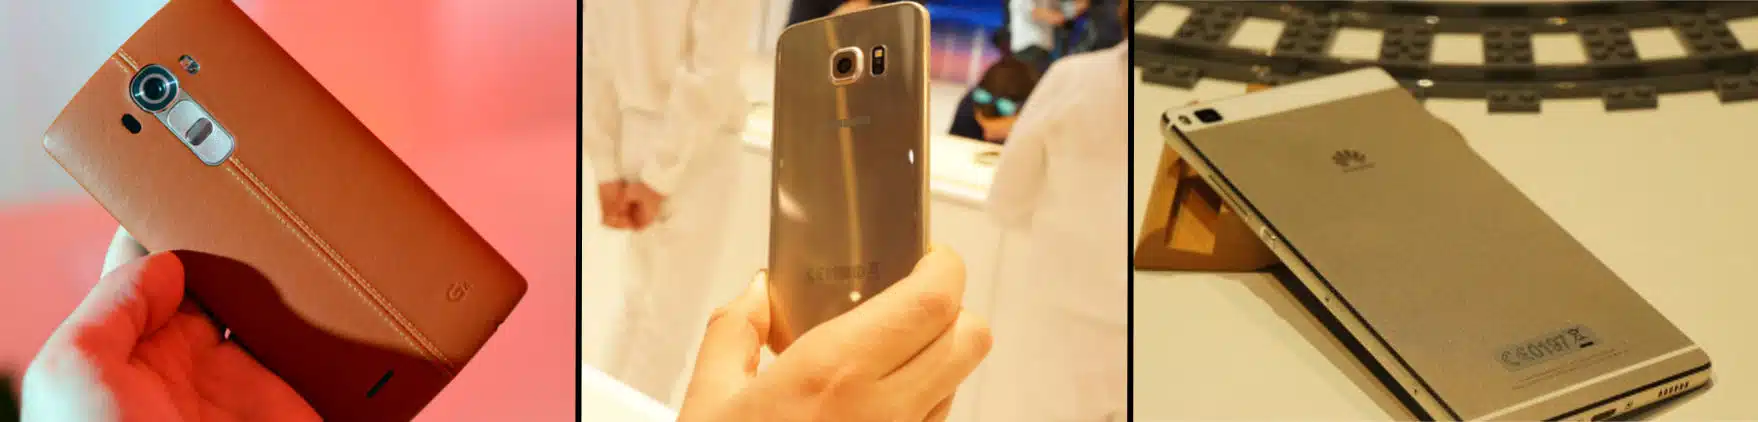 LG G4 vs Samsung Galaxy S6 Edge vs Huawei P8